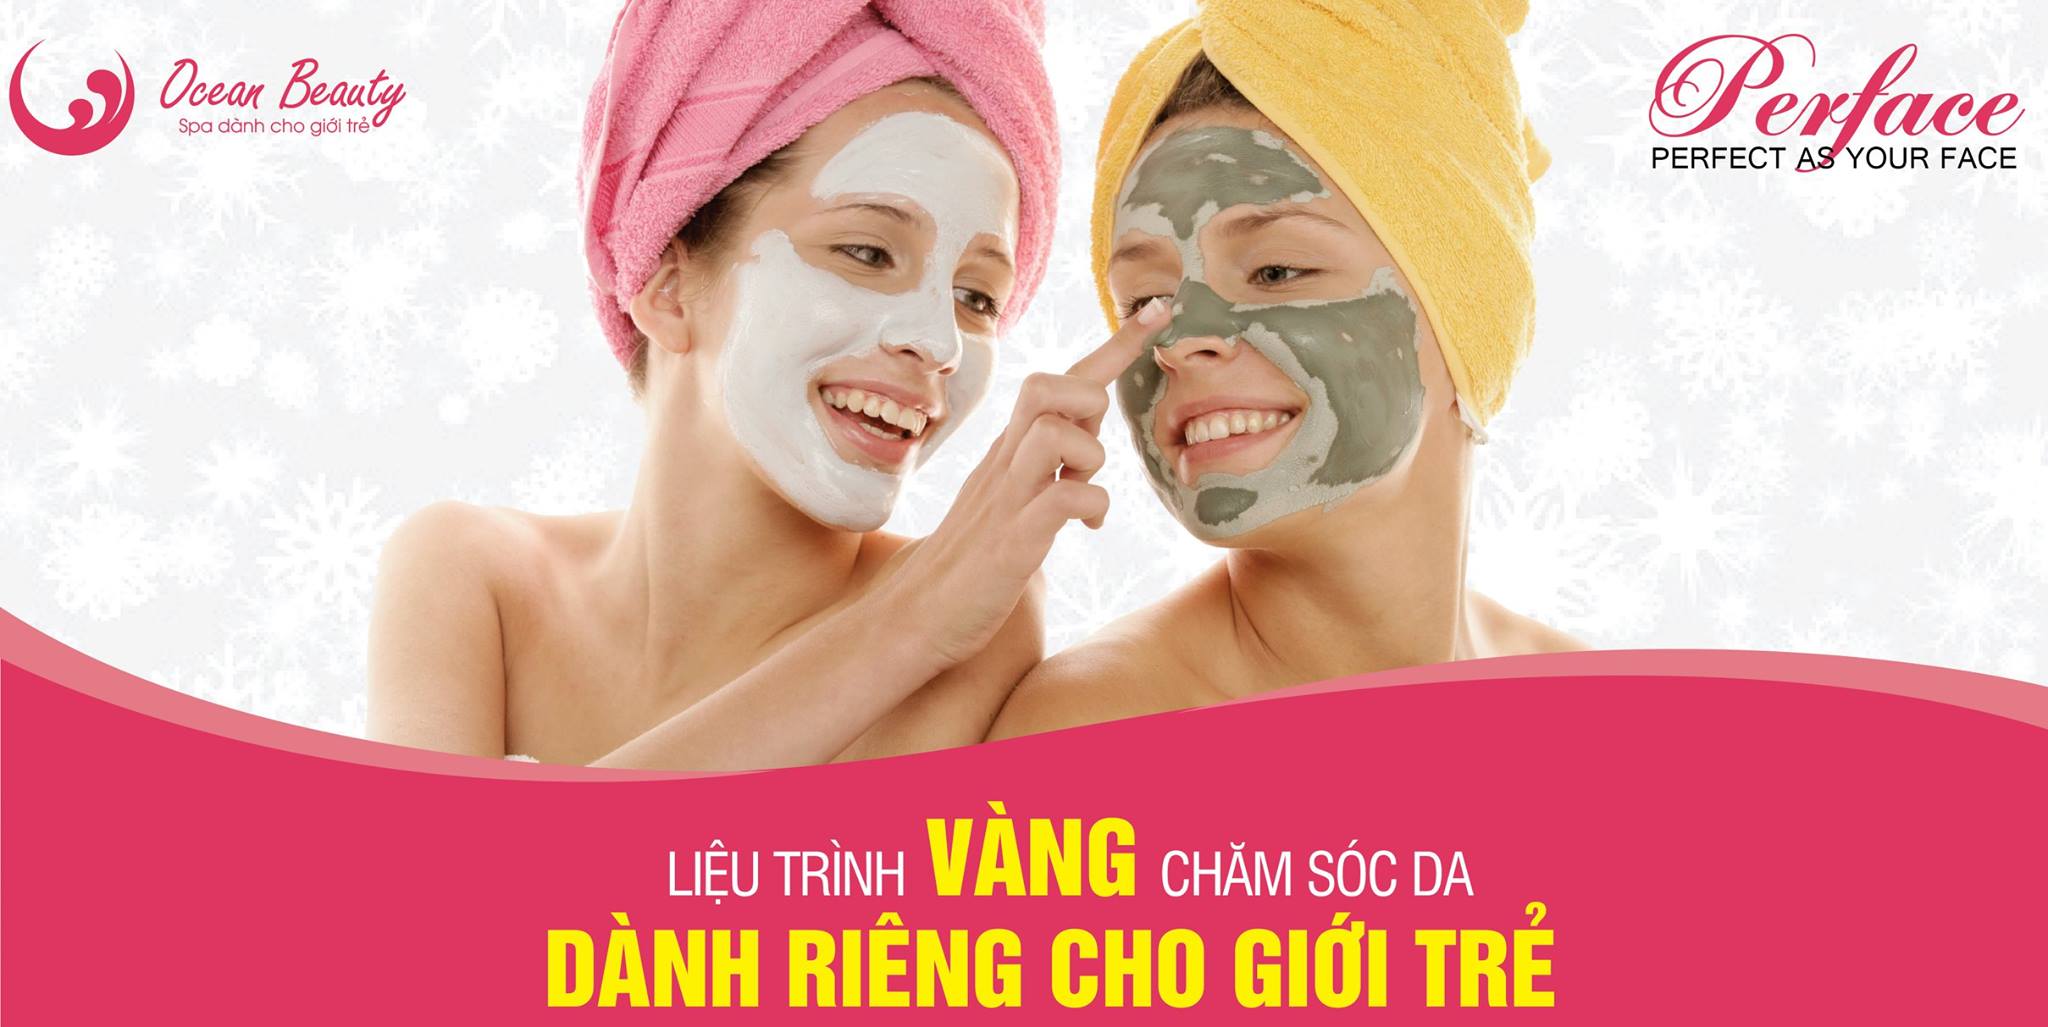 Top 8 Spa chăm sóc da mặt tốt ở Hà Nội được chị em lựa chọn nhiều nhất -  Ocean Beauty